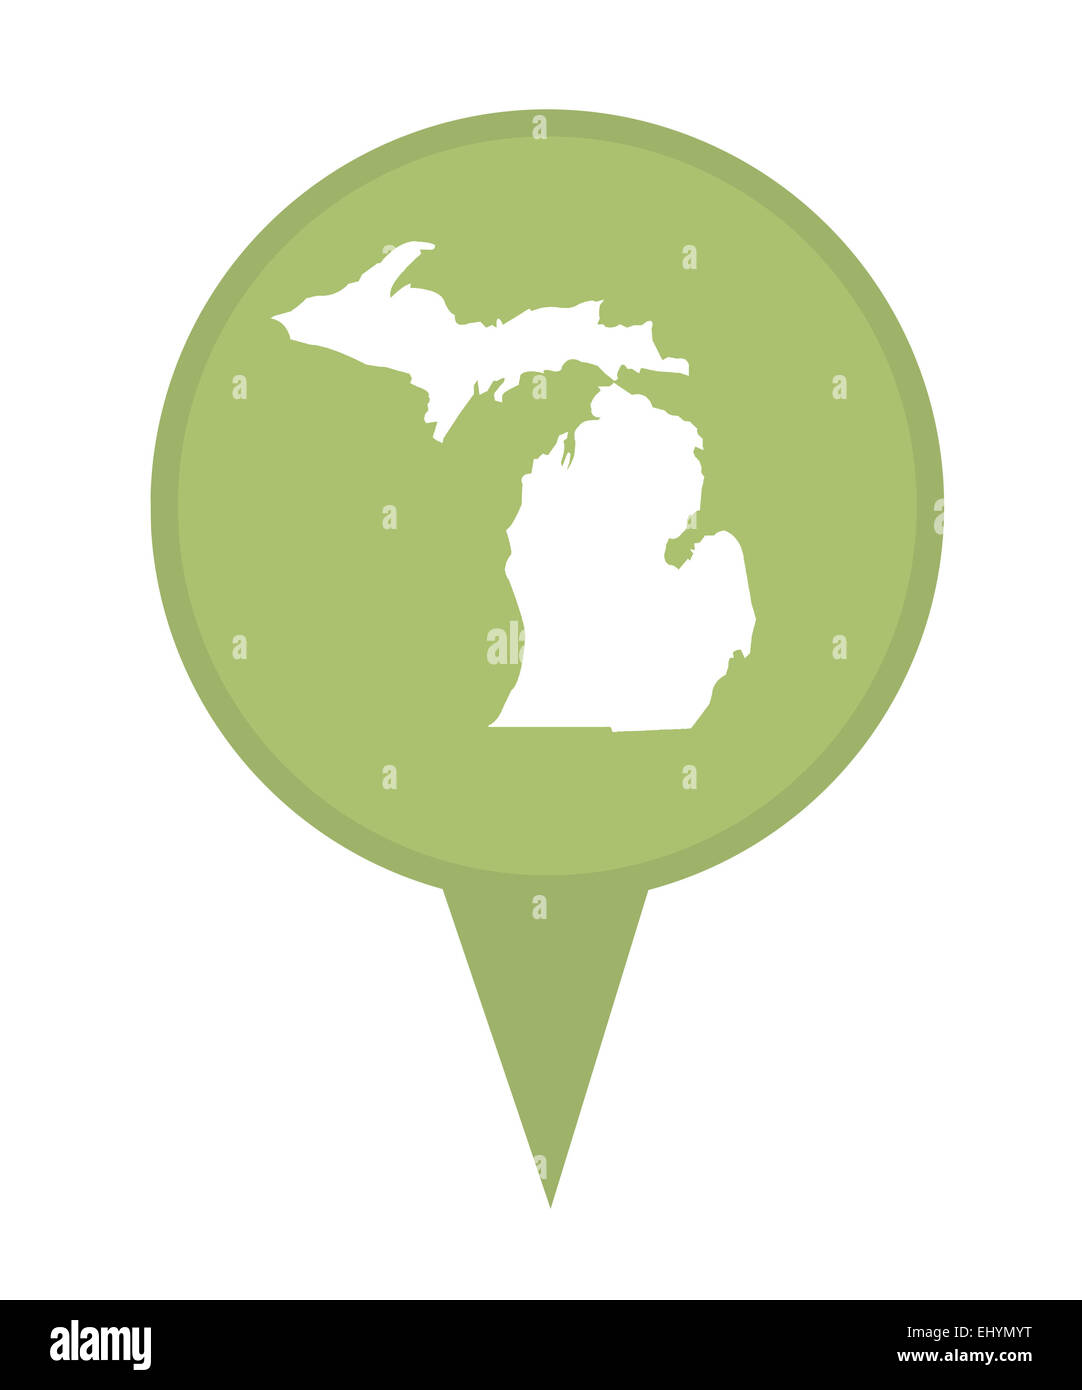 Dello stato americano del Michigan pin isolato su uno sfondo bianco. Foto Stock